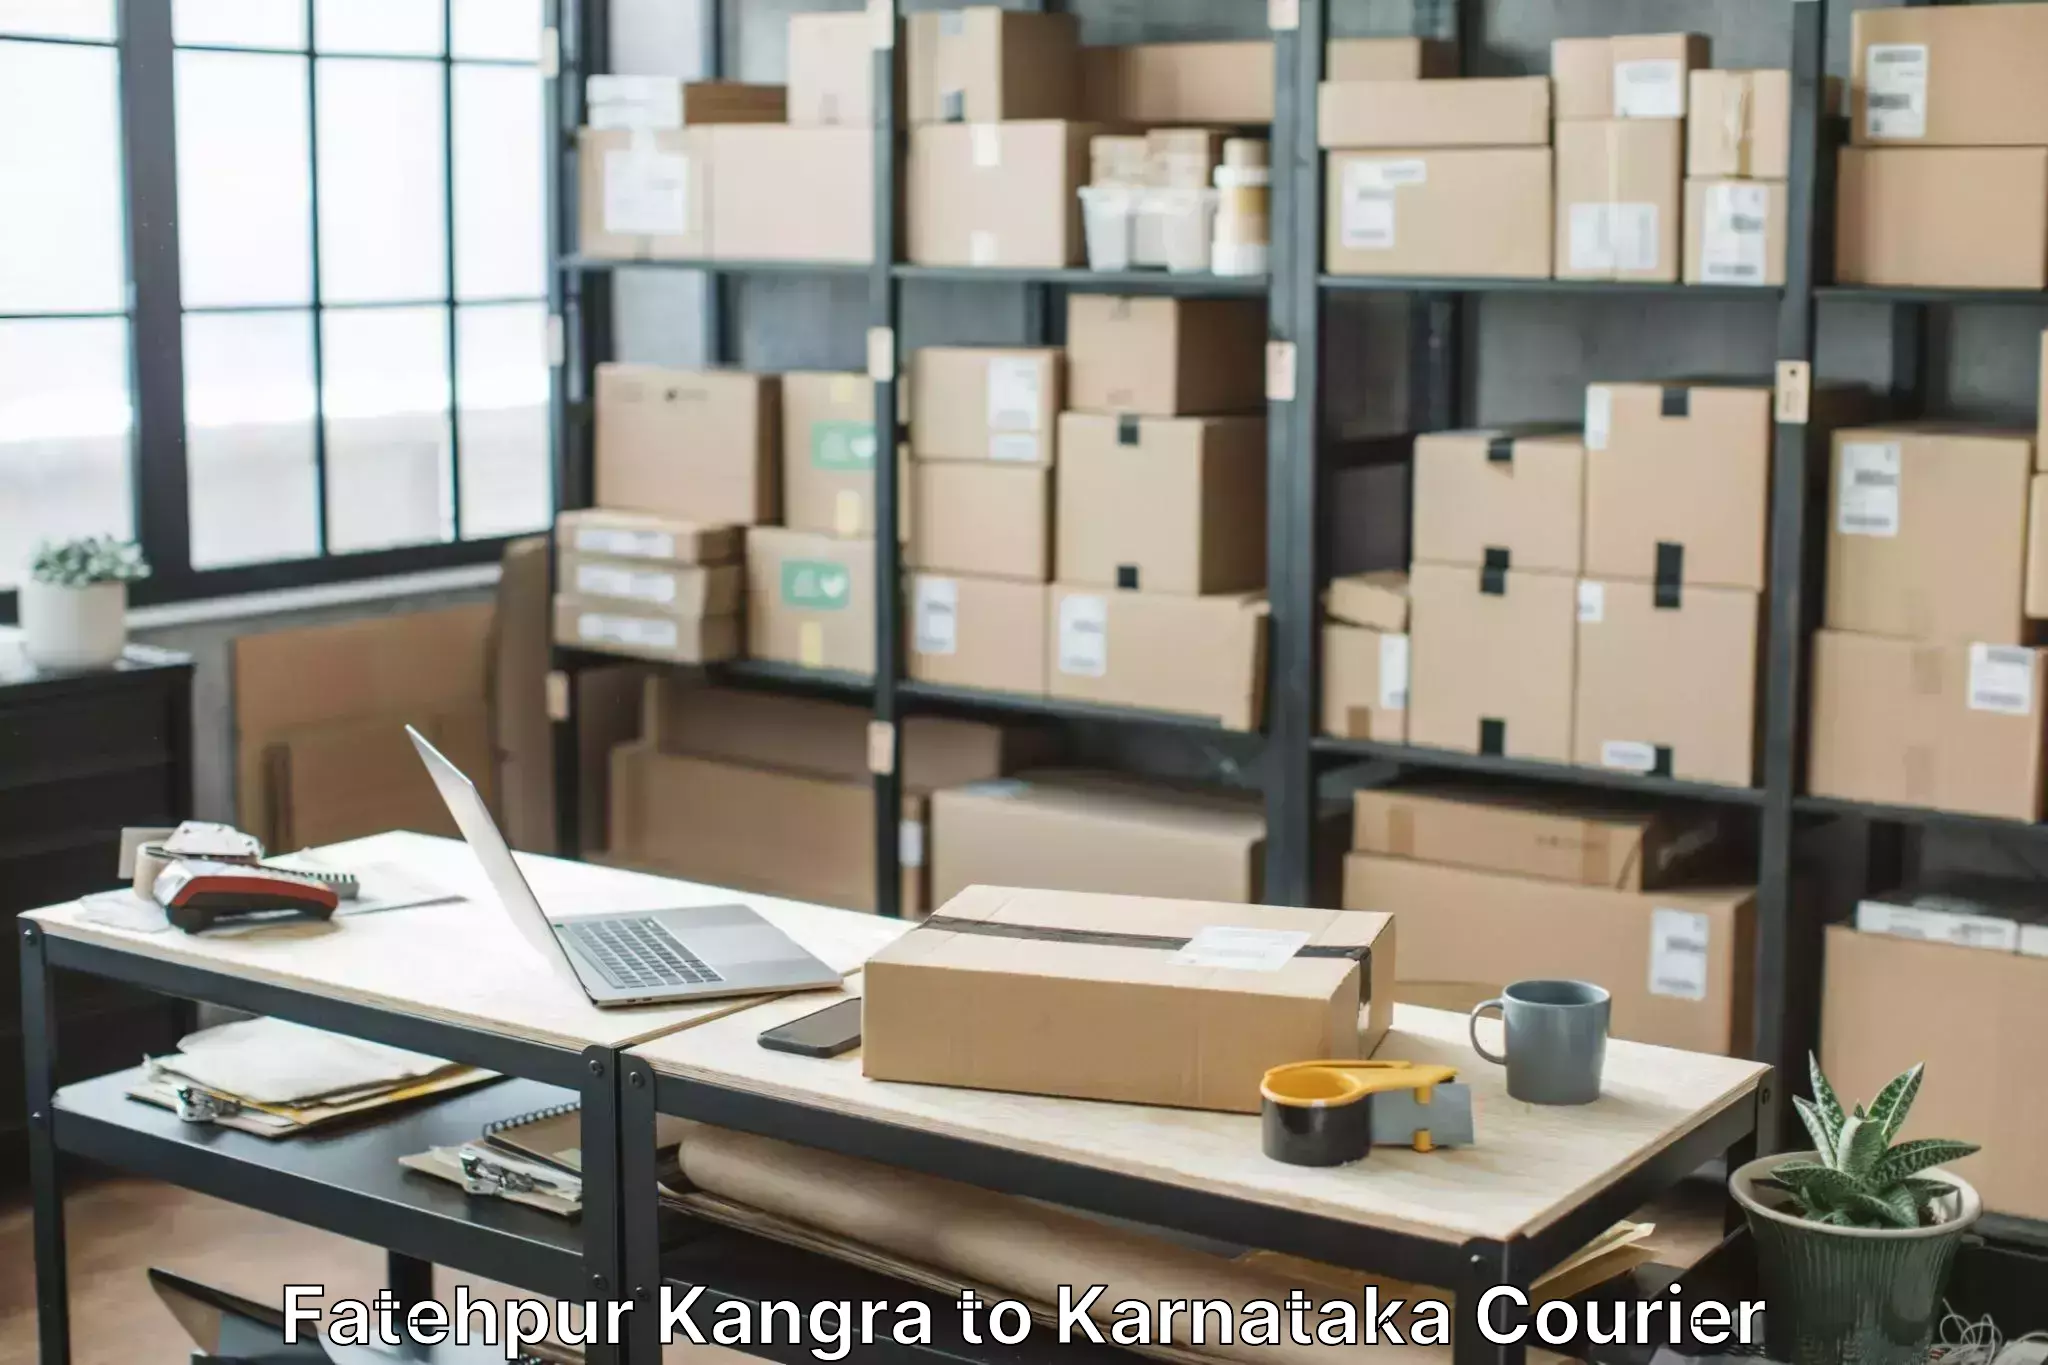 Professional home movers Fatehpur Kangra to Bangalore